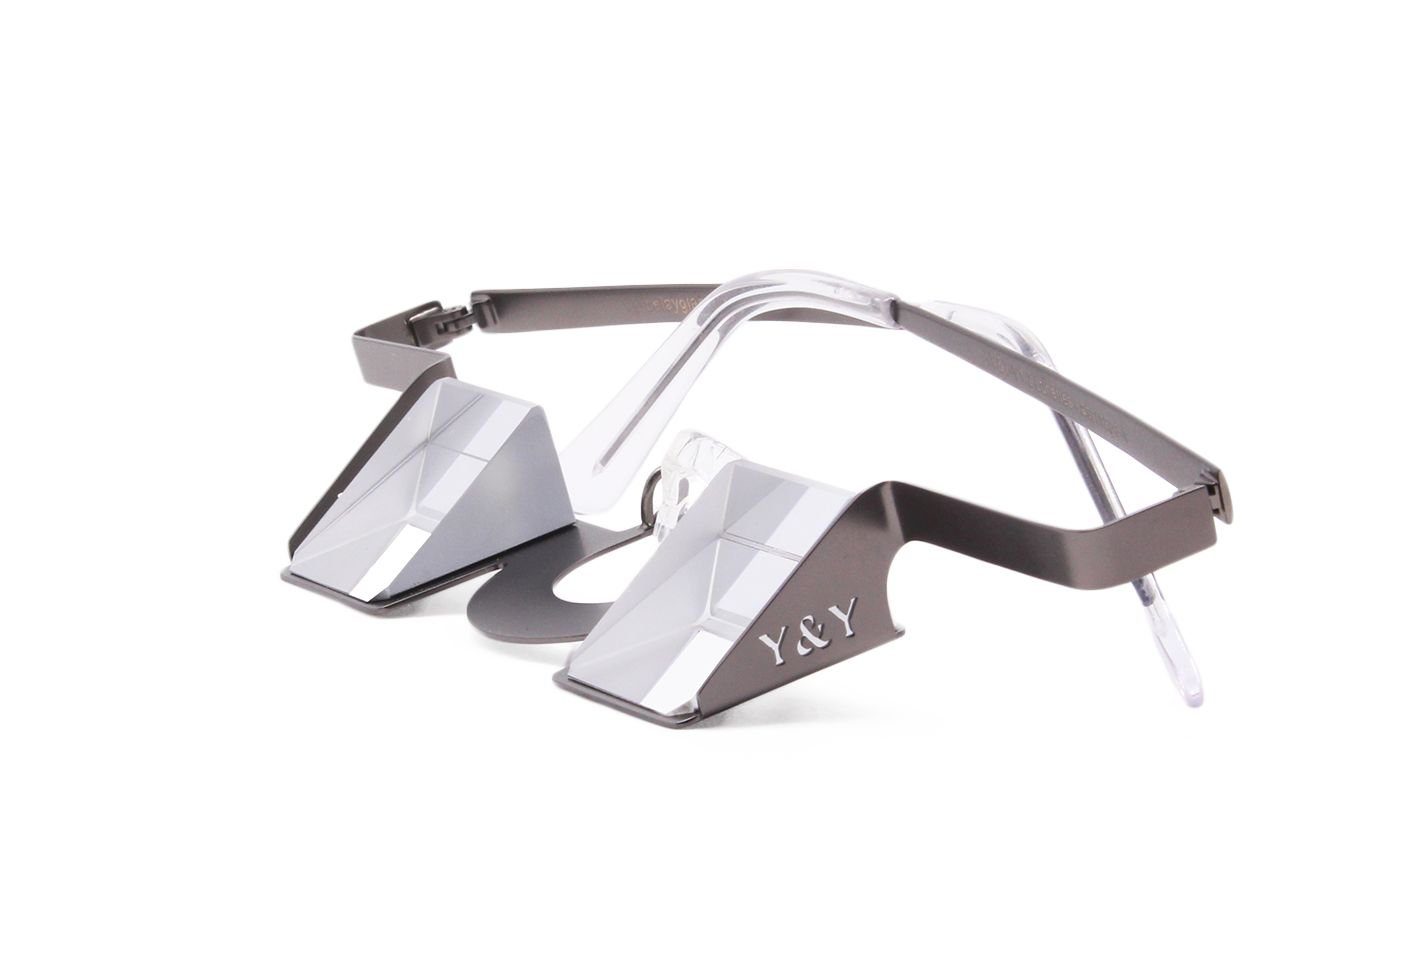 Y&Y Vertical Kletter-Trainingsgerät Yy Vertical Sicherungsbrille Classic Accessoires